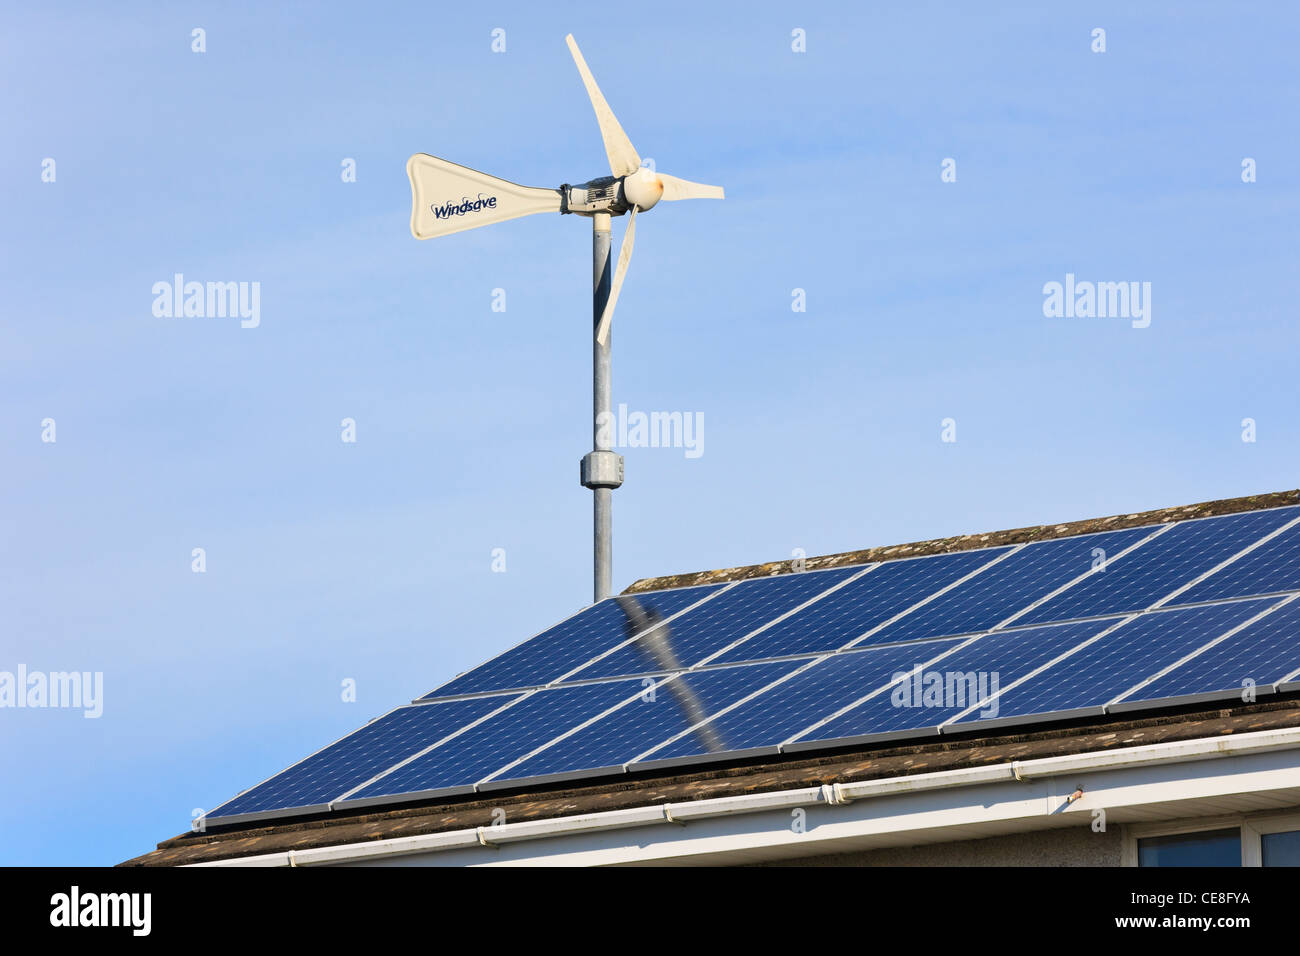 Windsave micro Windenergieanlage und Sonnenkollektoren auf einem inländischen eco Home Haus Dach für die Stromerzeugung mit alternativer Energie. Großbritannien Großbritannien Stockfoto